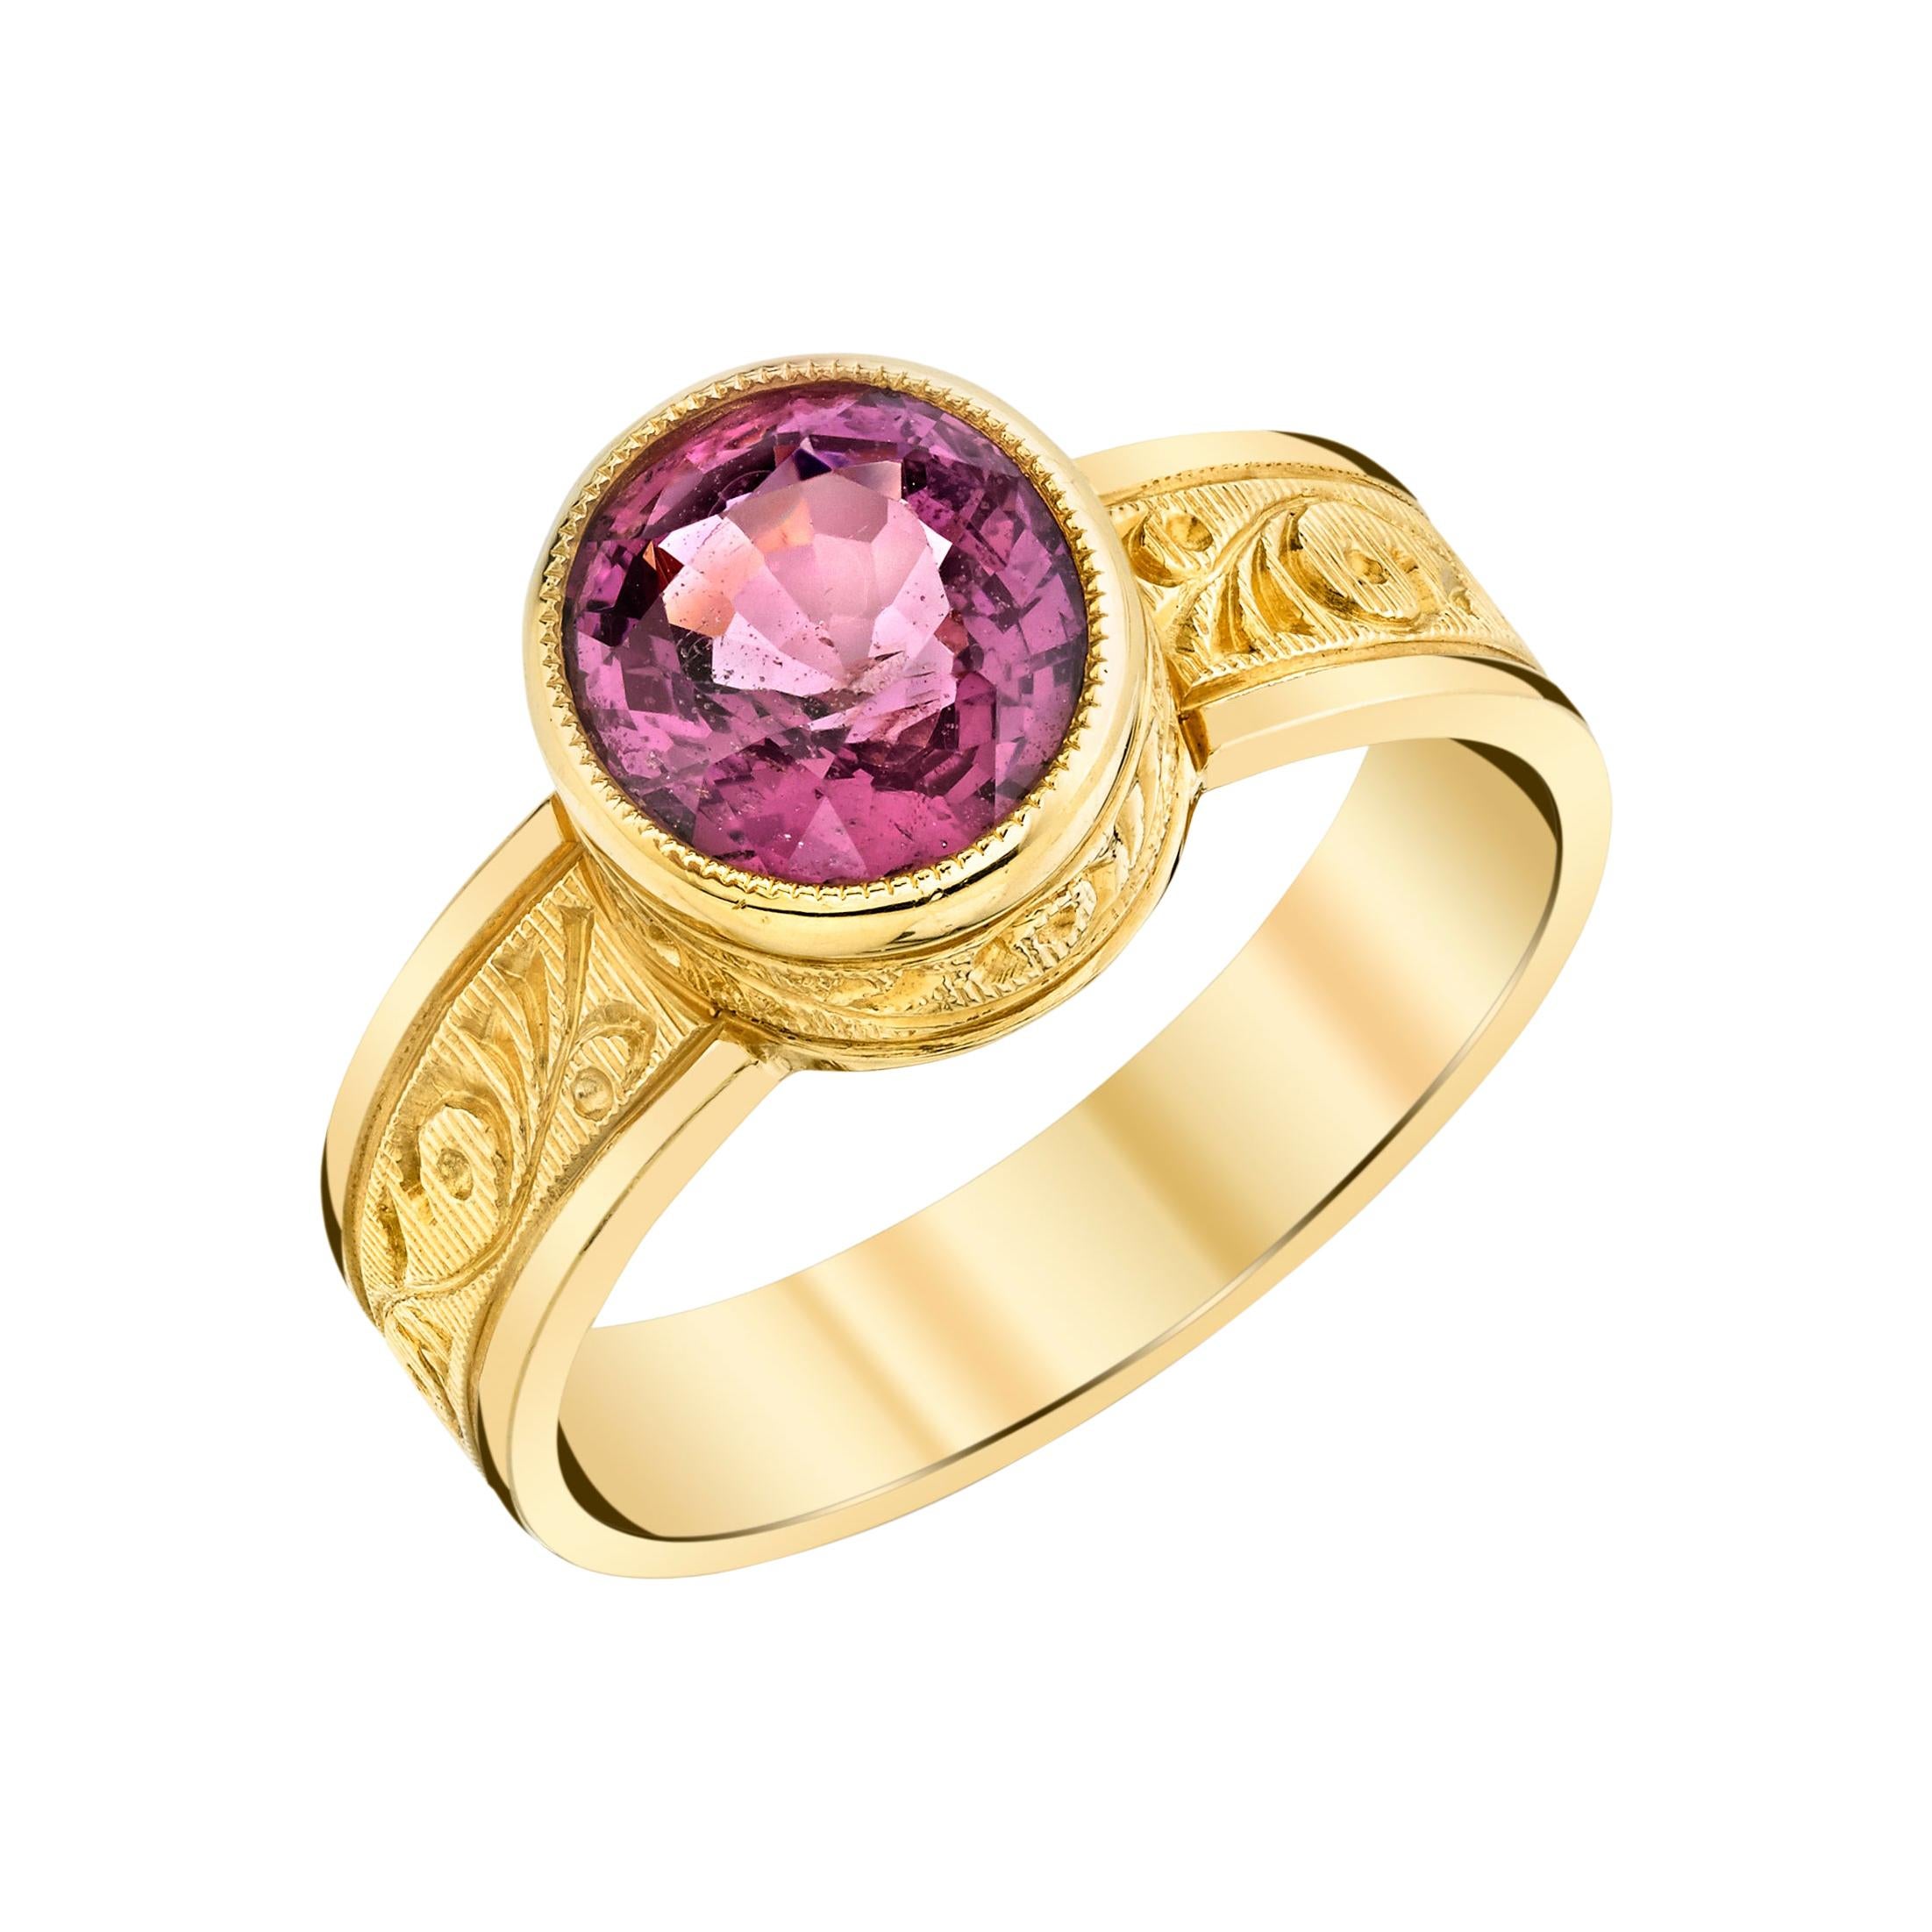 Handgravierter Ring aus rosa Spinell und 18 Karat Gelbgold, 1,93 Karat